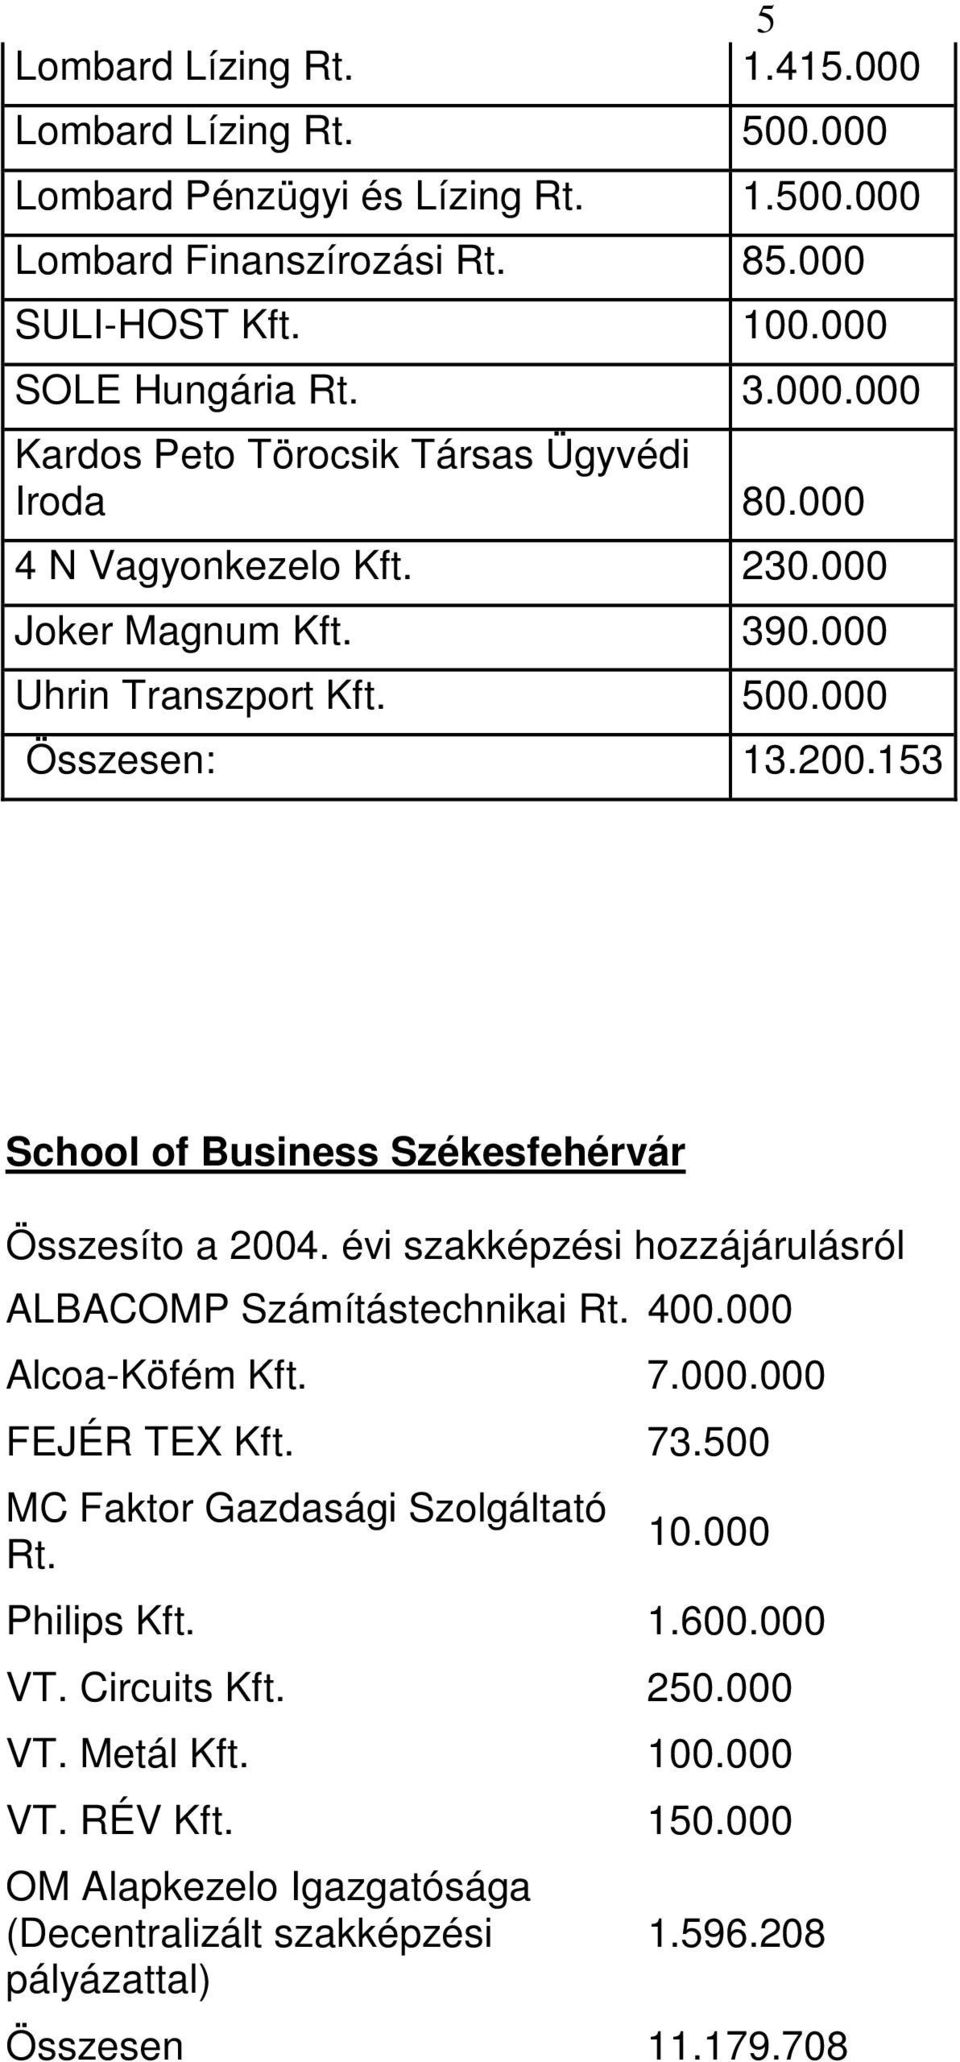 153 School of Business Székesfehérvár ALBACOMP Számítástechnikai Rt. 400.000 Alcoa-Köfém Kft. 7.000.000 FEJÉR TEX Kft. 73.500 MC Faktor Gazdasági Szolgáltató Rt. 10.